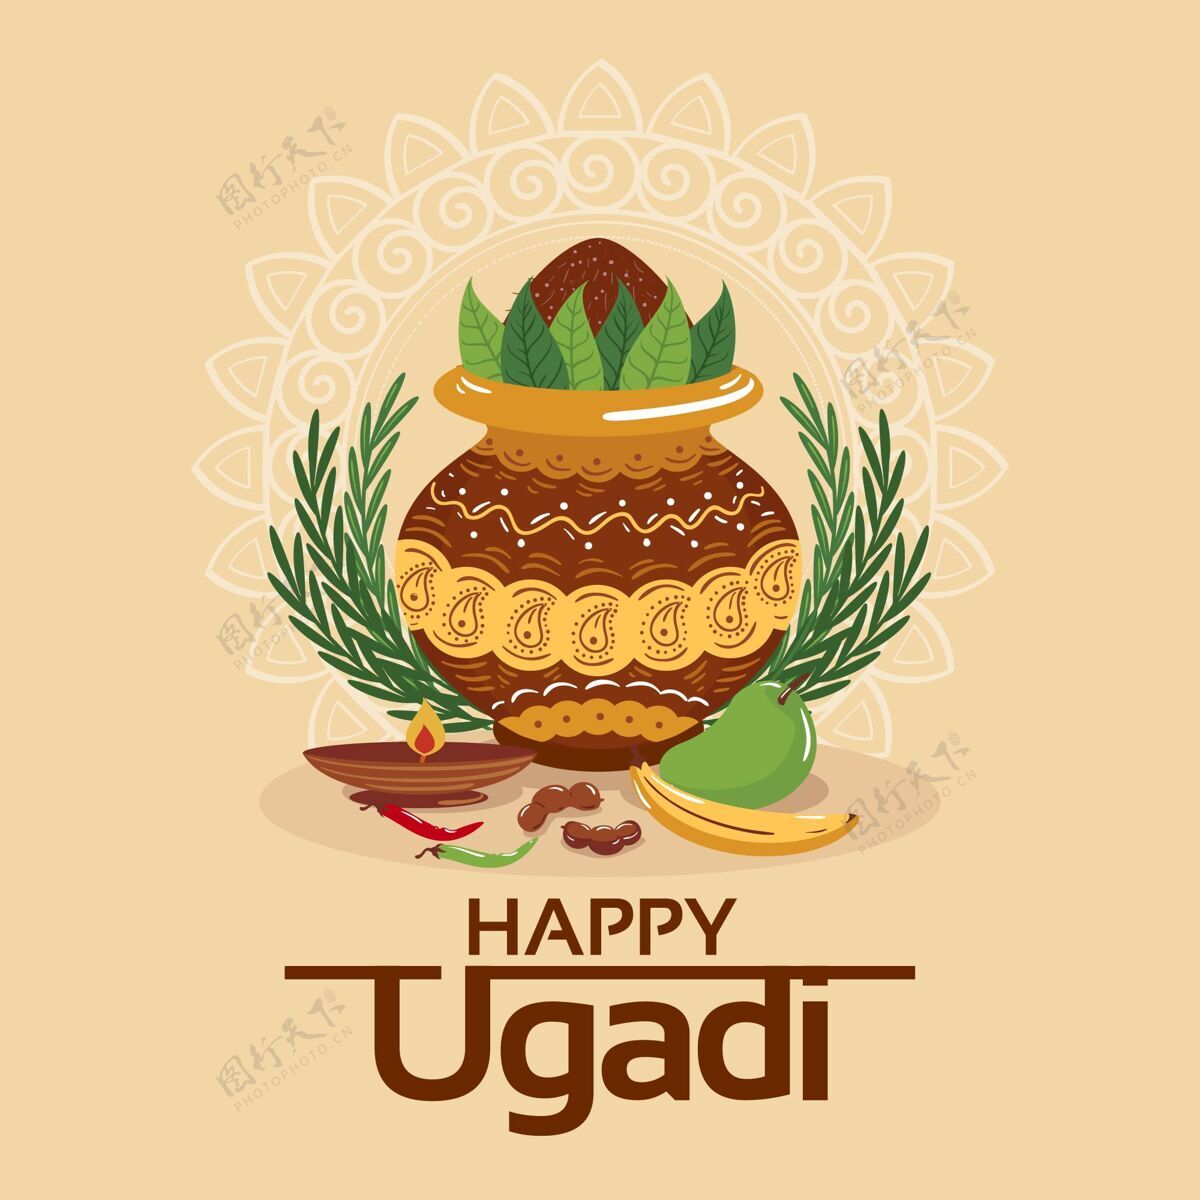 问候语手绘快乐乌加迪插图插图庆祝古迪帕德瓦